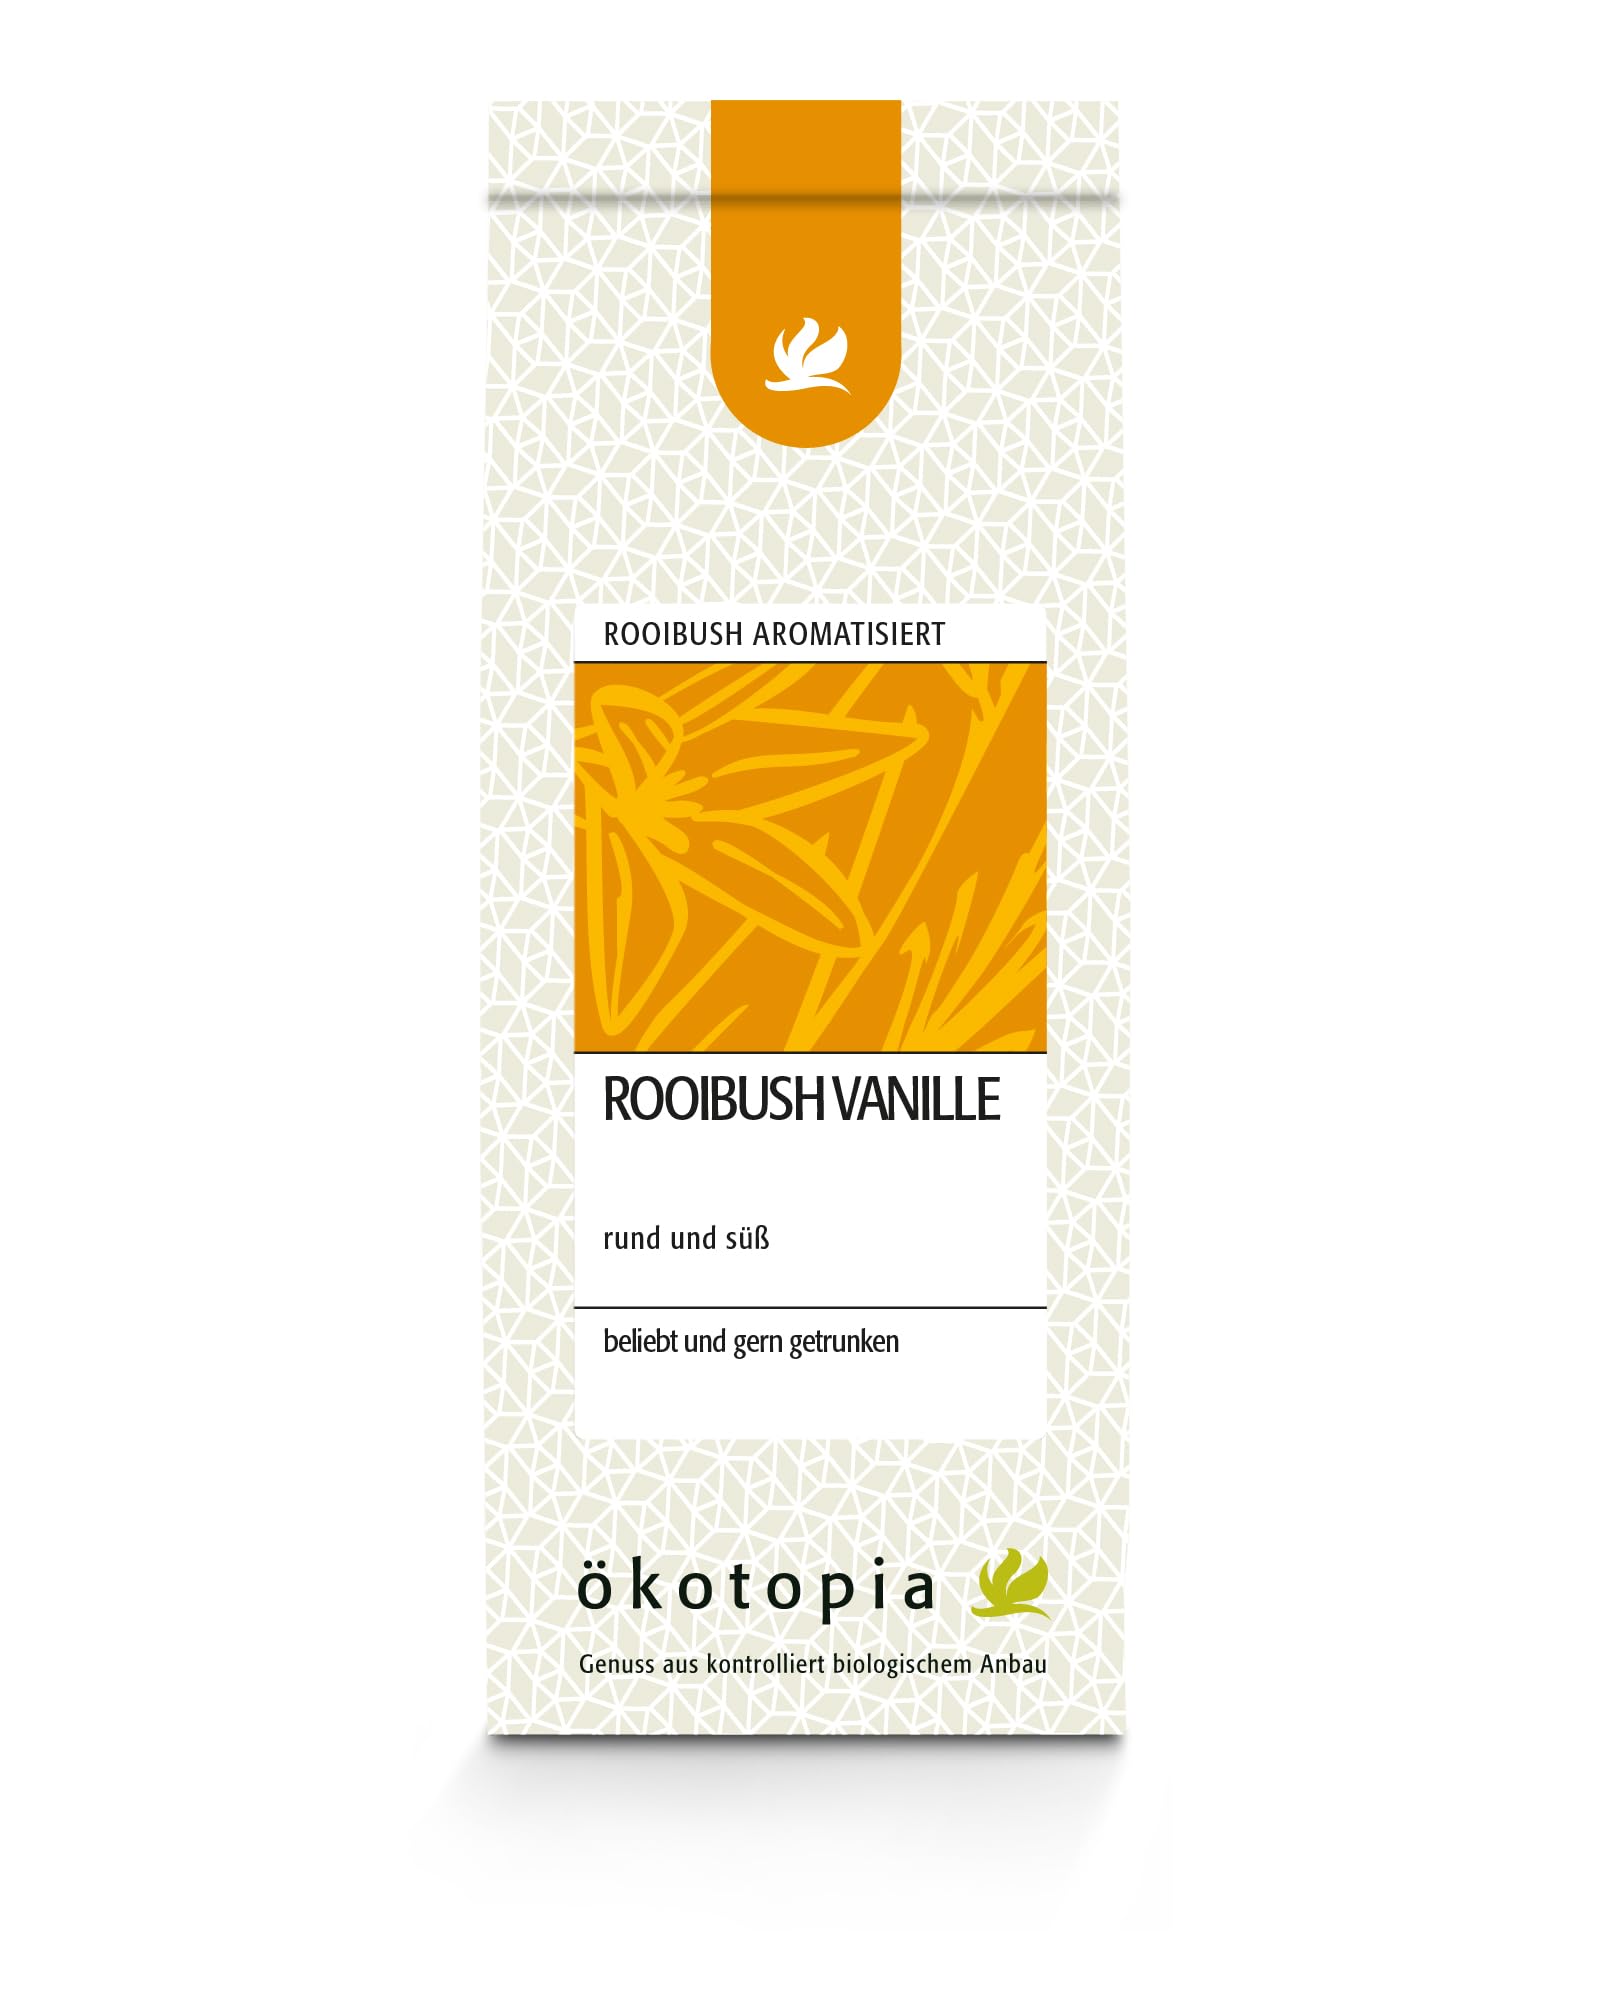 Ökotopia Roibusch Tee aromatisiert Rooibush Vanille, 5er Pack (5 x 100 g)